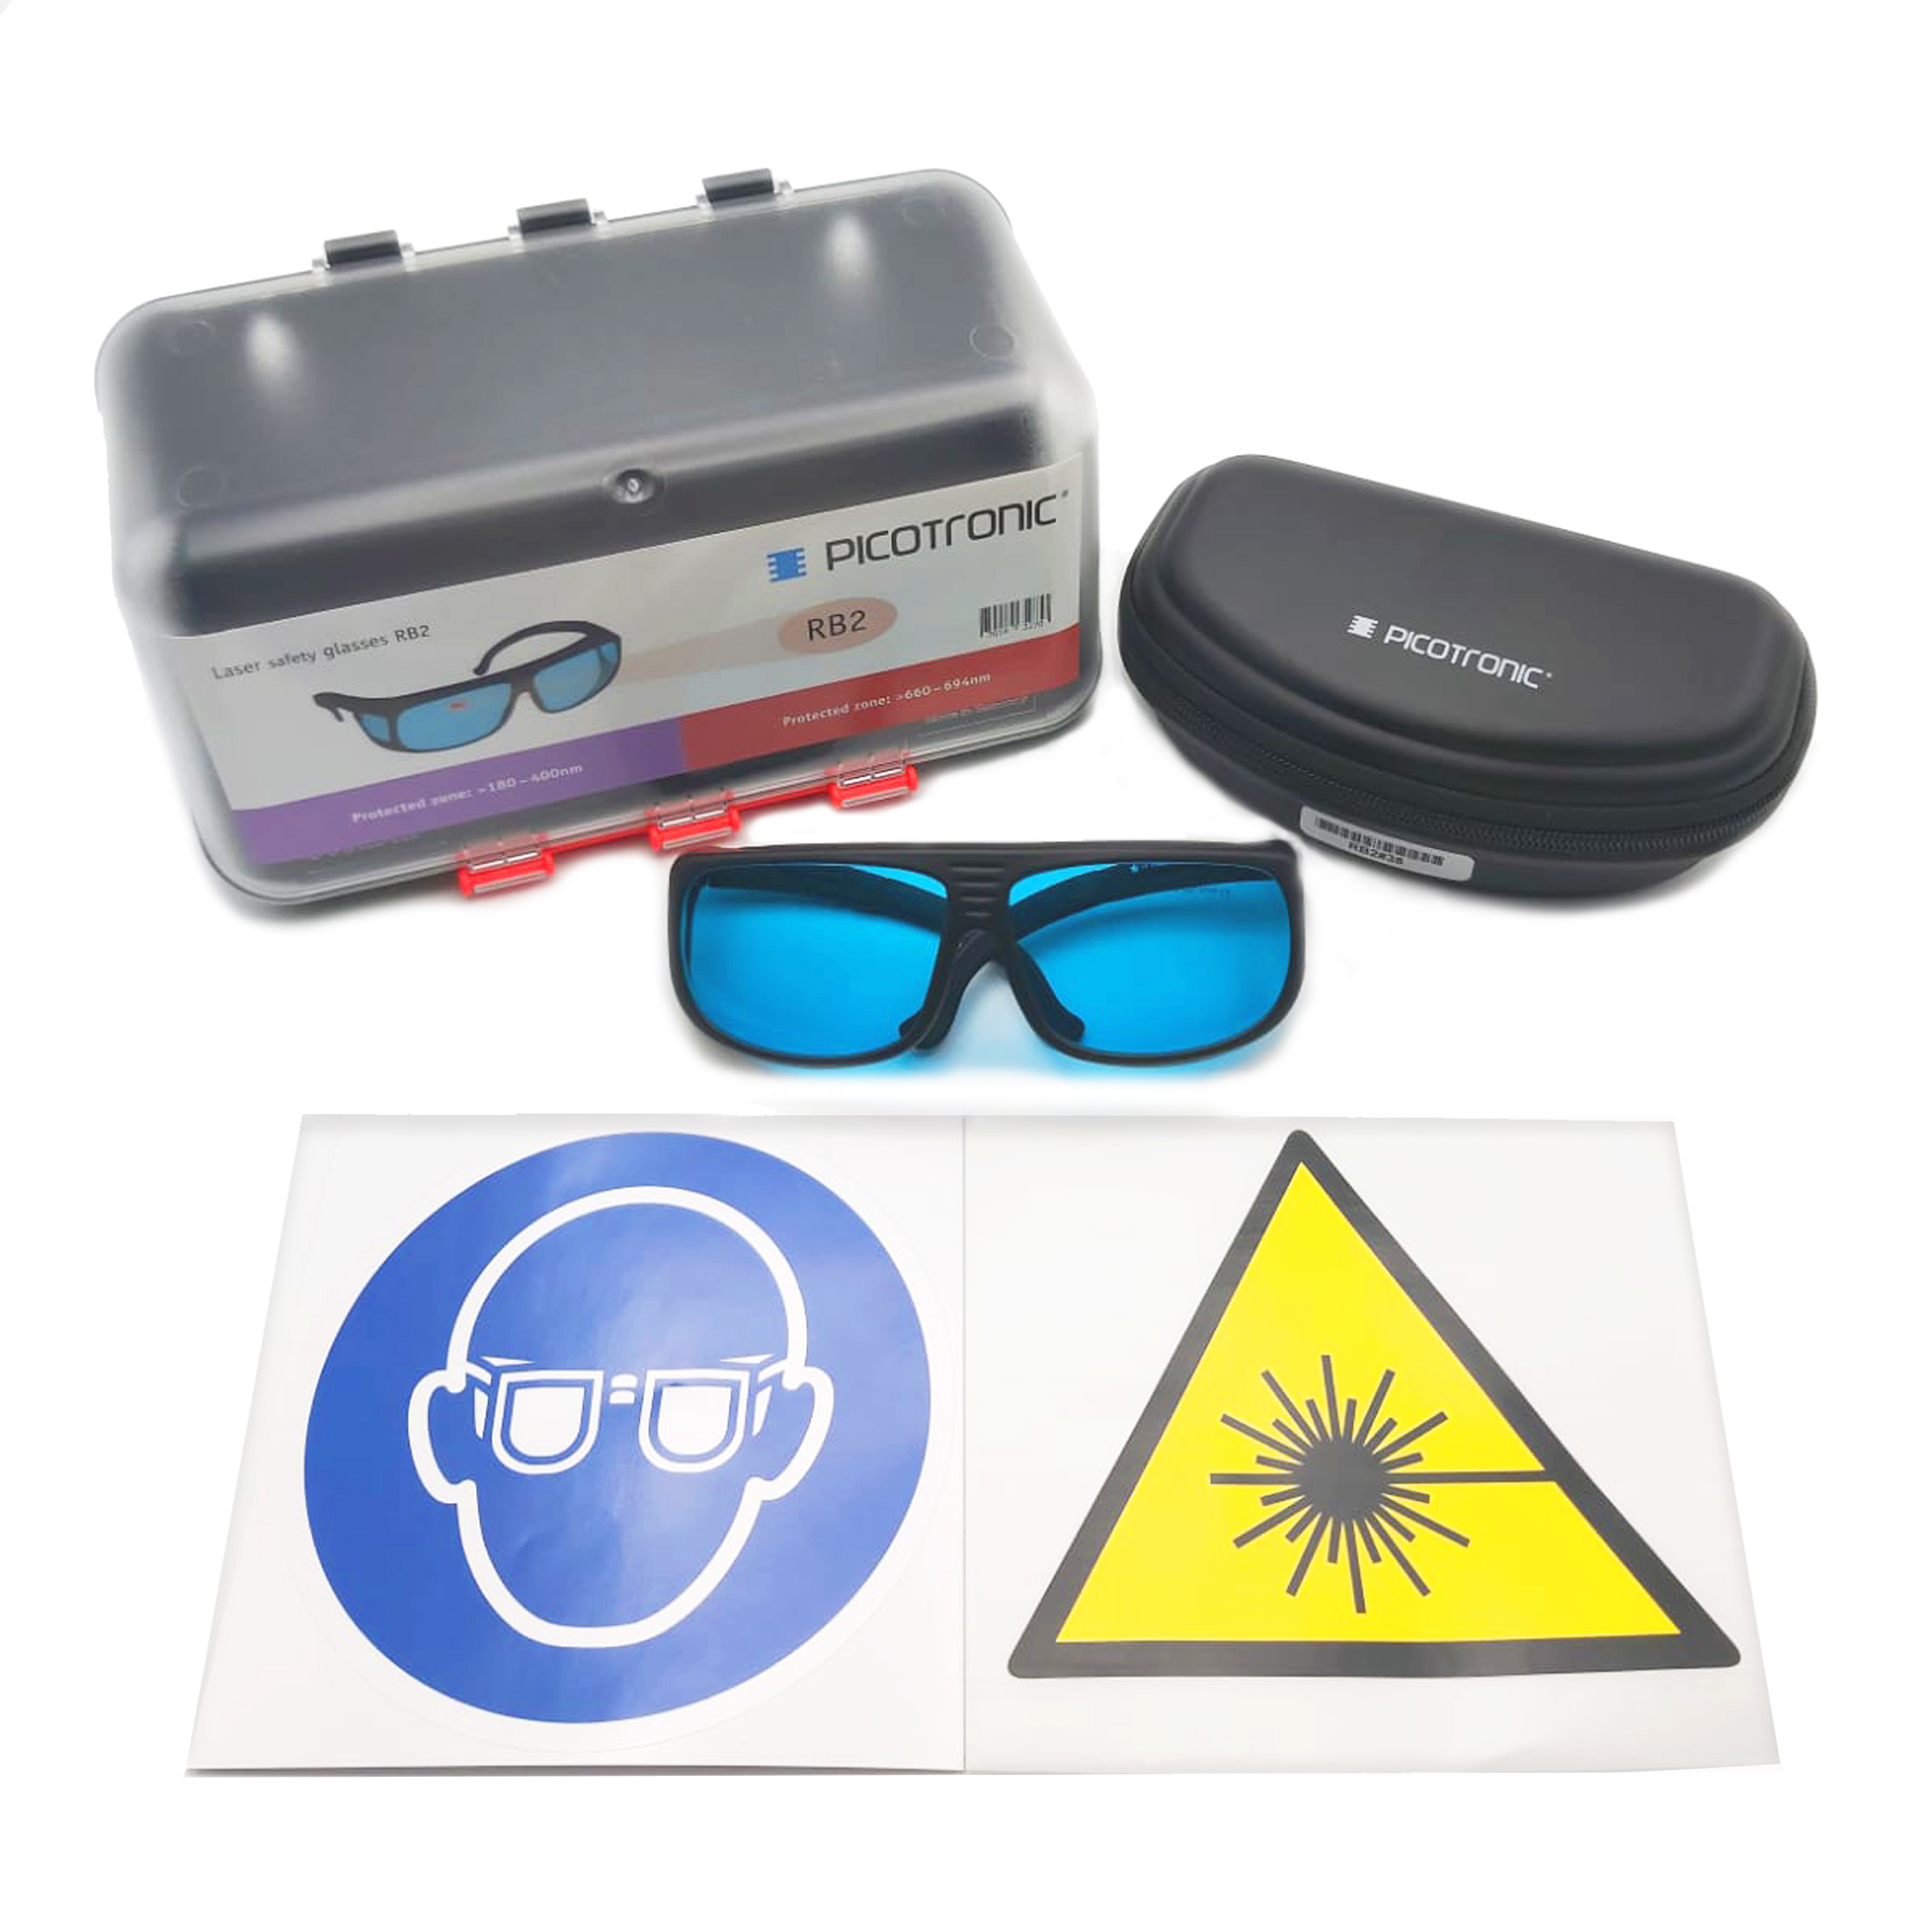 Laserschutzbrillen-Set, zertifiziert nach DIN EN207, 180-400nm. Zum Laserschweißen, Laserschneiden,…